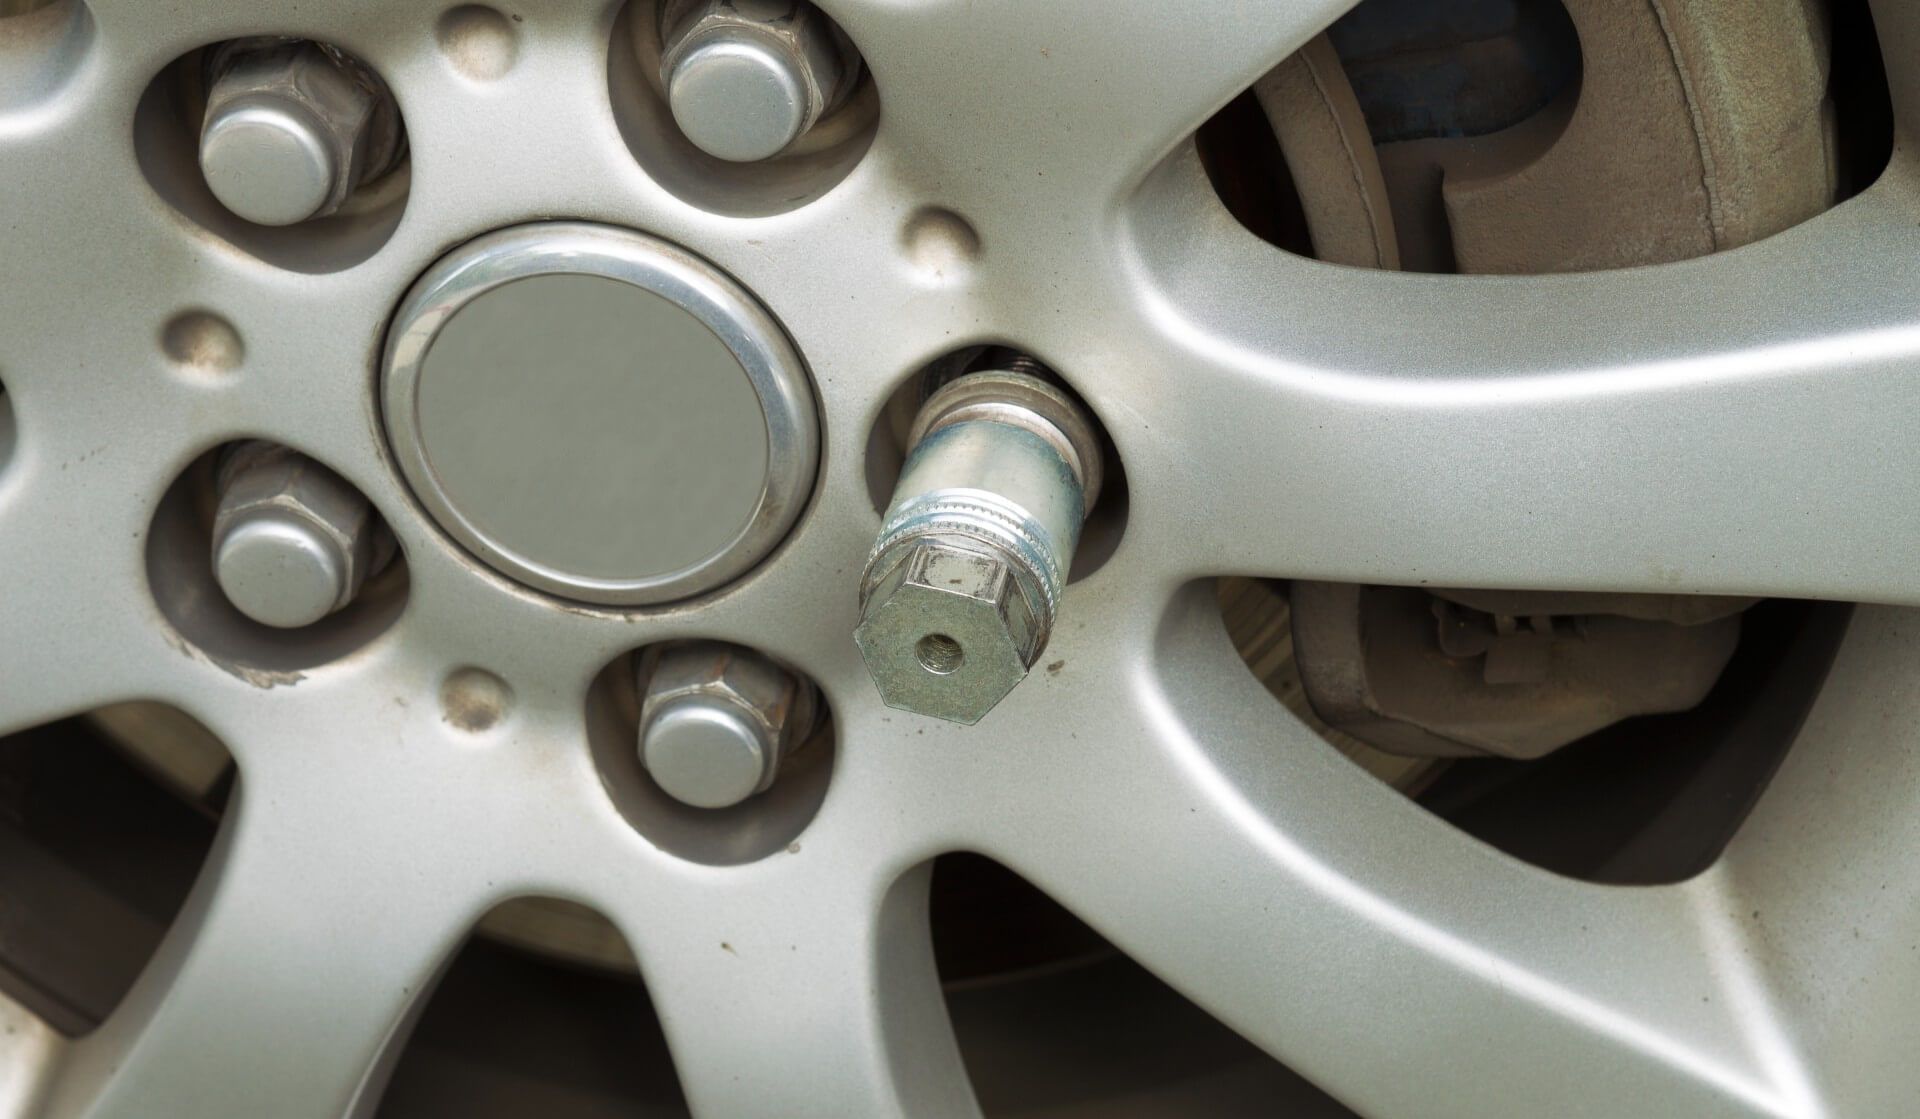 A wheel lock key in the hubcap of a car's wheel